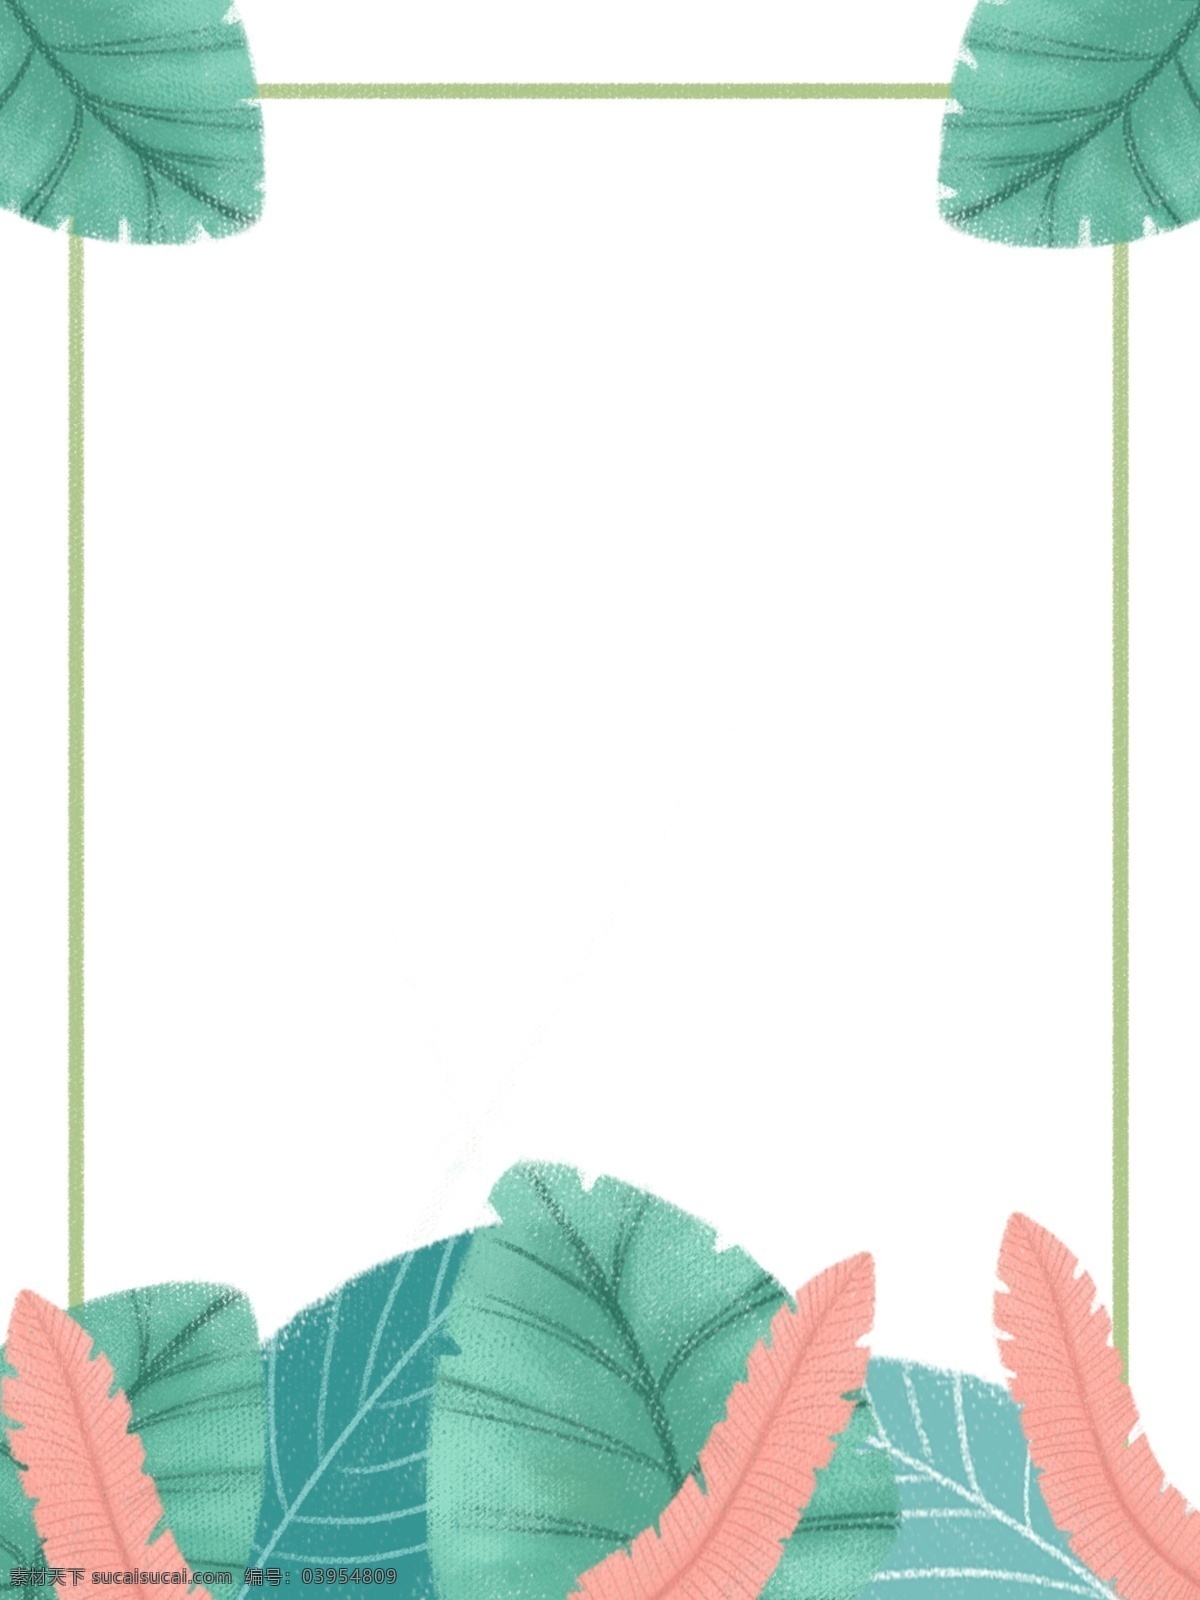 原创 手绘 森 系 简洁 植物 边框 背景 森系 蓝色